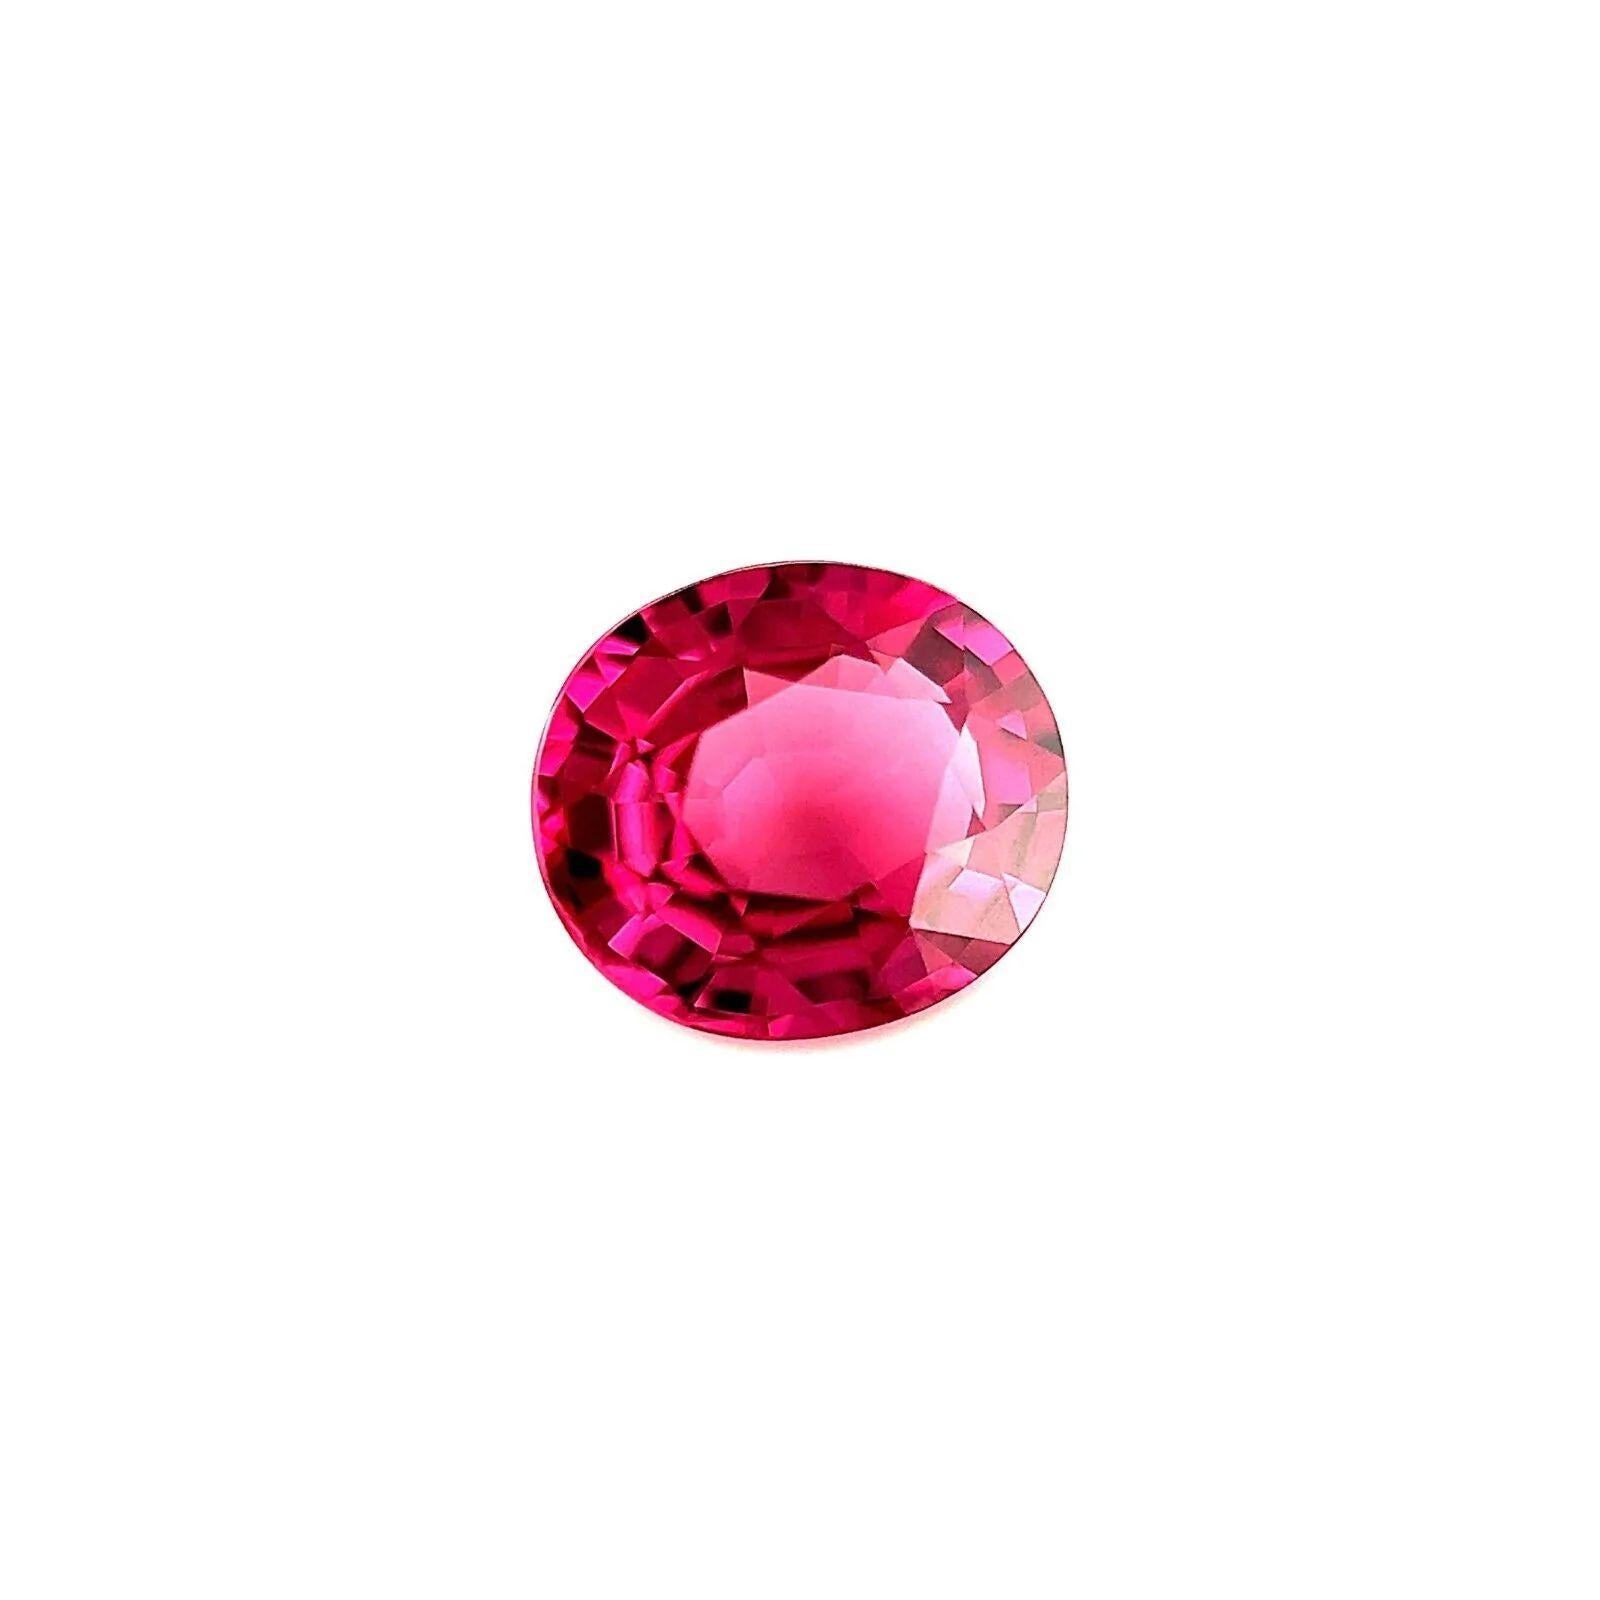 1.72ct Grenat rhodolite naturel rose vif, taille ovale, pierre précieuse non taillée 7.7x6.7mm VVS

Fine pierre précieuse naturelle grenat rhodolite.
1,72 carat avec une belle couleur rose pourpre vif et une excellente clarté, une pierre précieuse